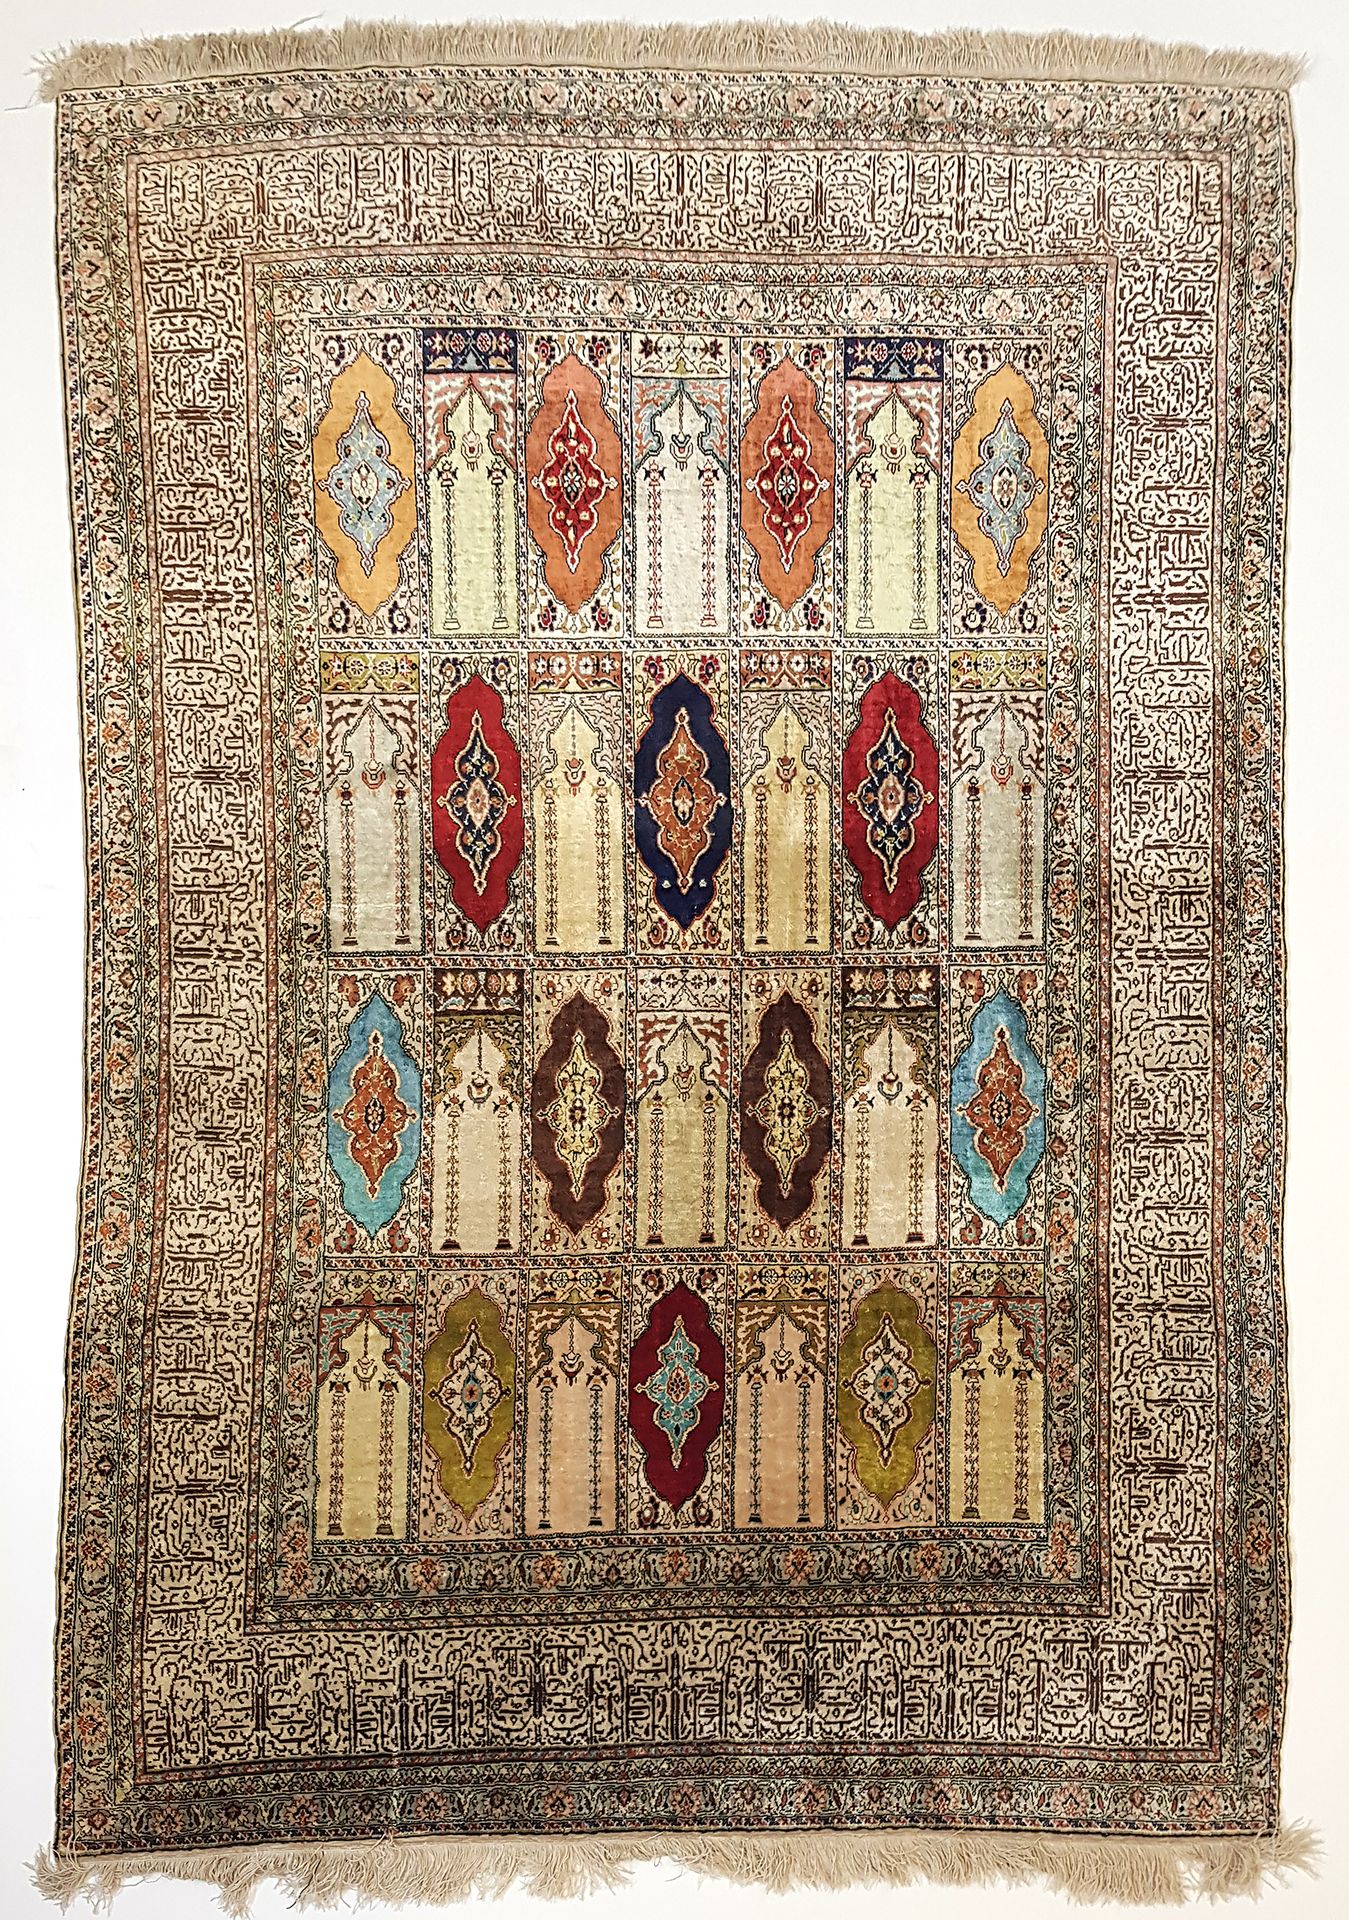 Null Fina alfombra de Kayseri (Turquía), hacia 1975

Dimensiones: 175 x 123 cm

&hellip;